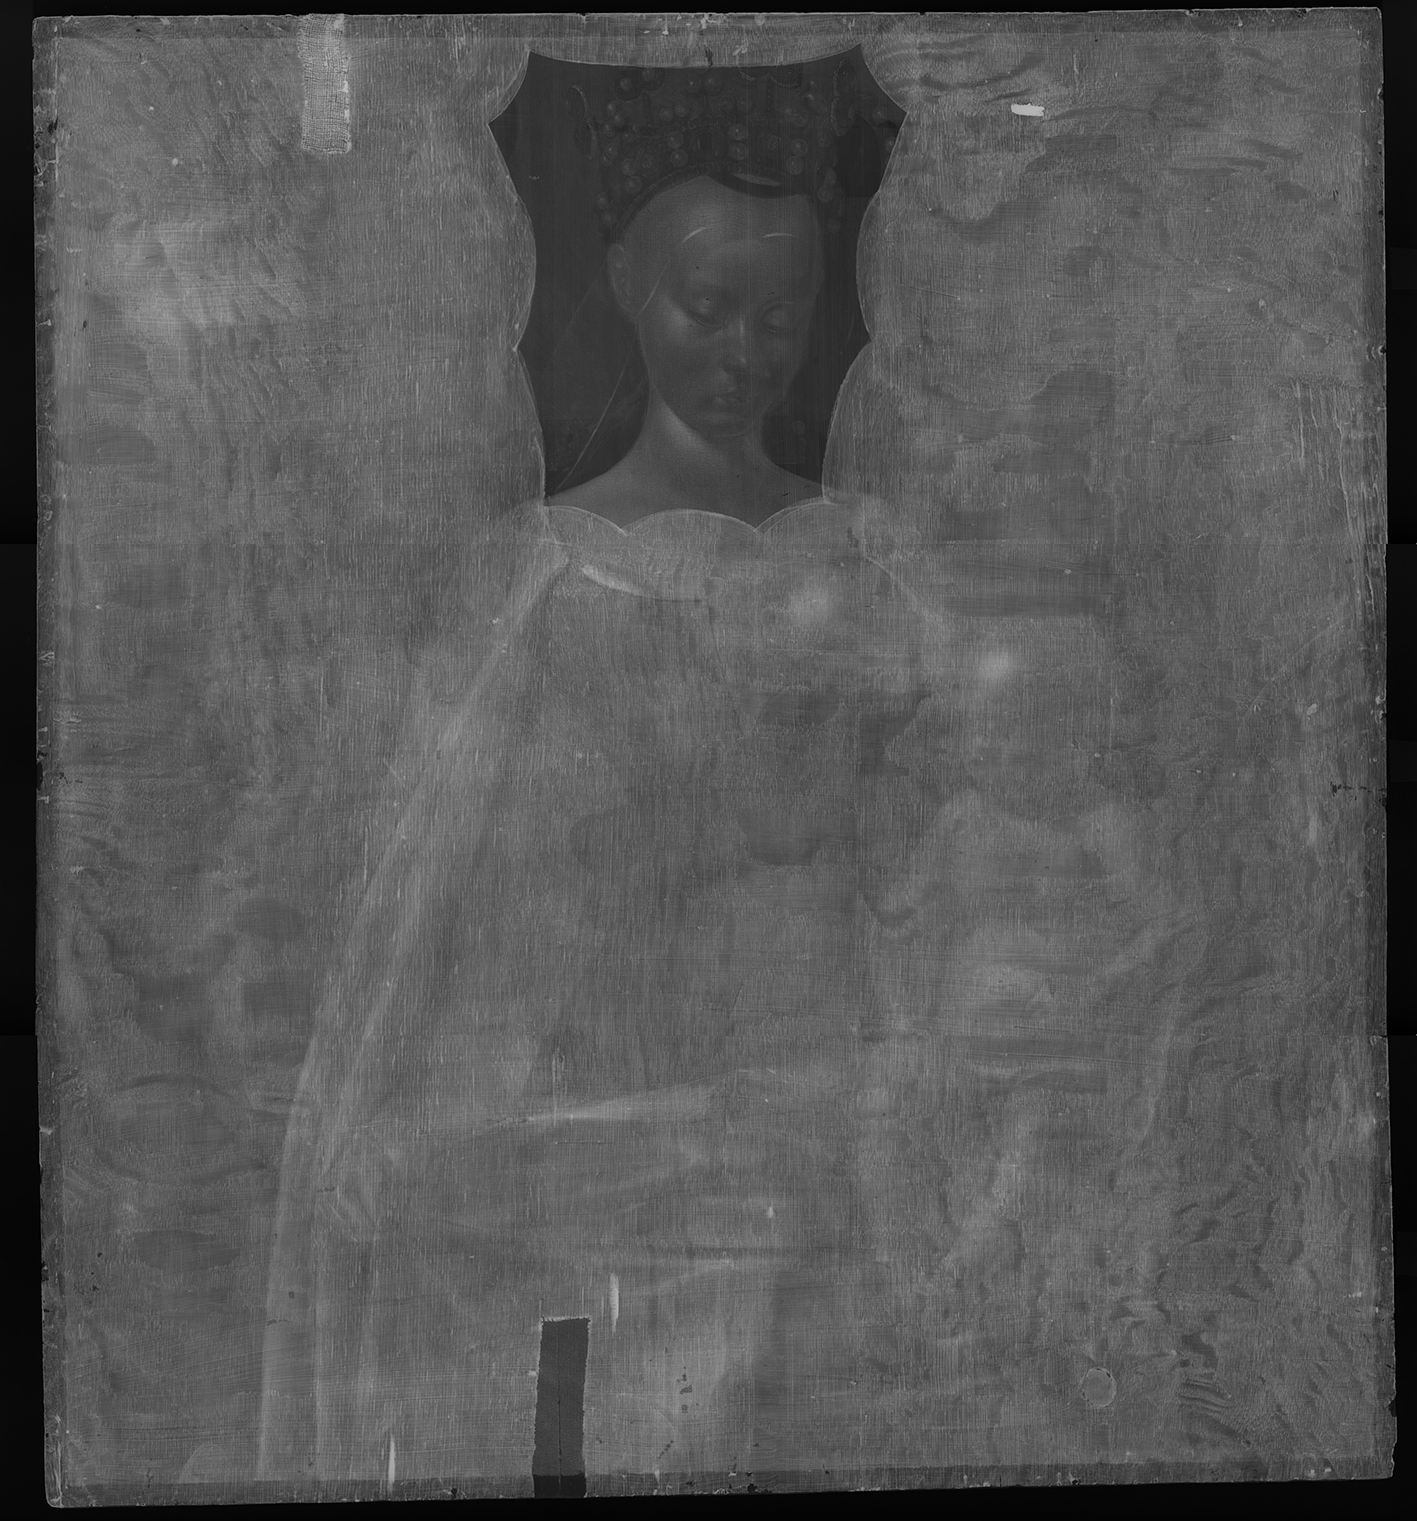 Röntgenopname van de Madonna van Fouquet